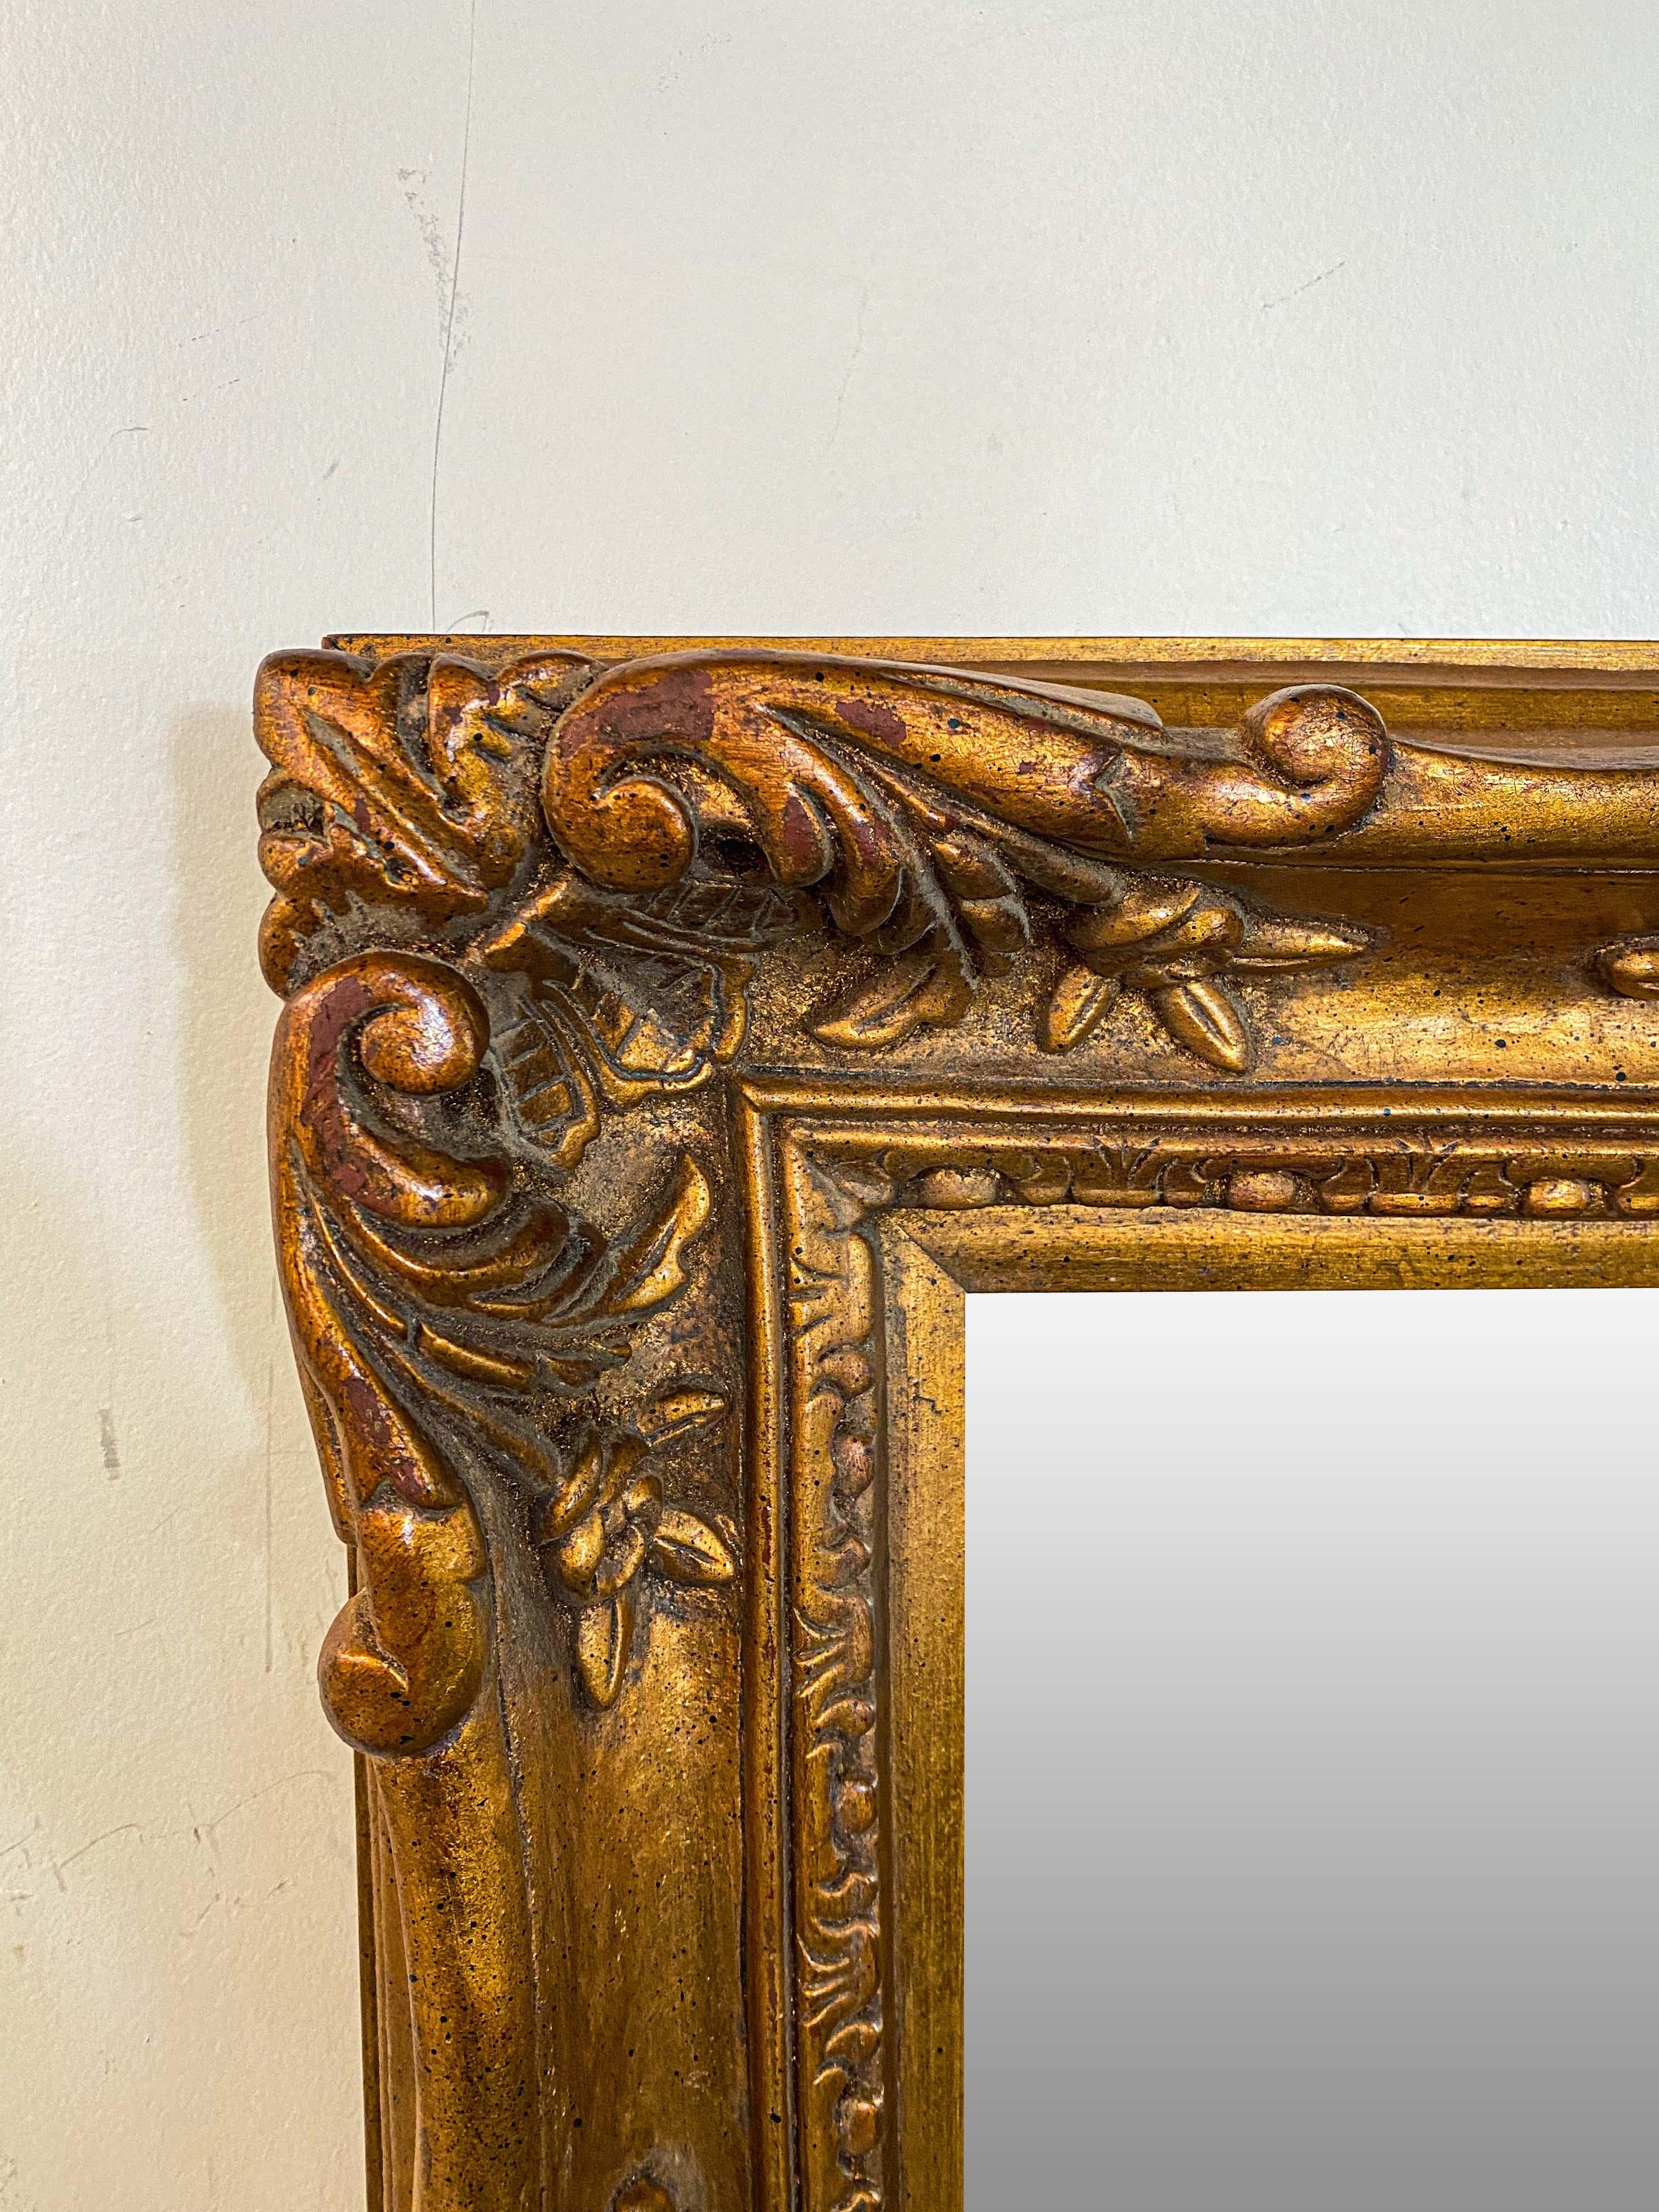 Un miroir rectangulaire de style baroque français, élégant et de grande classe. Finement sculpté et présentant des motifs complexes de fleurs, d'acanthes et de feuilles, le miroir est fabriqué en bois doré et sa taille moyenne est parfaite pour